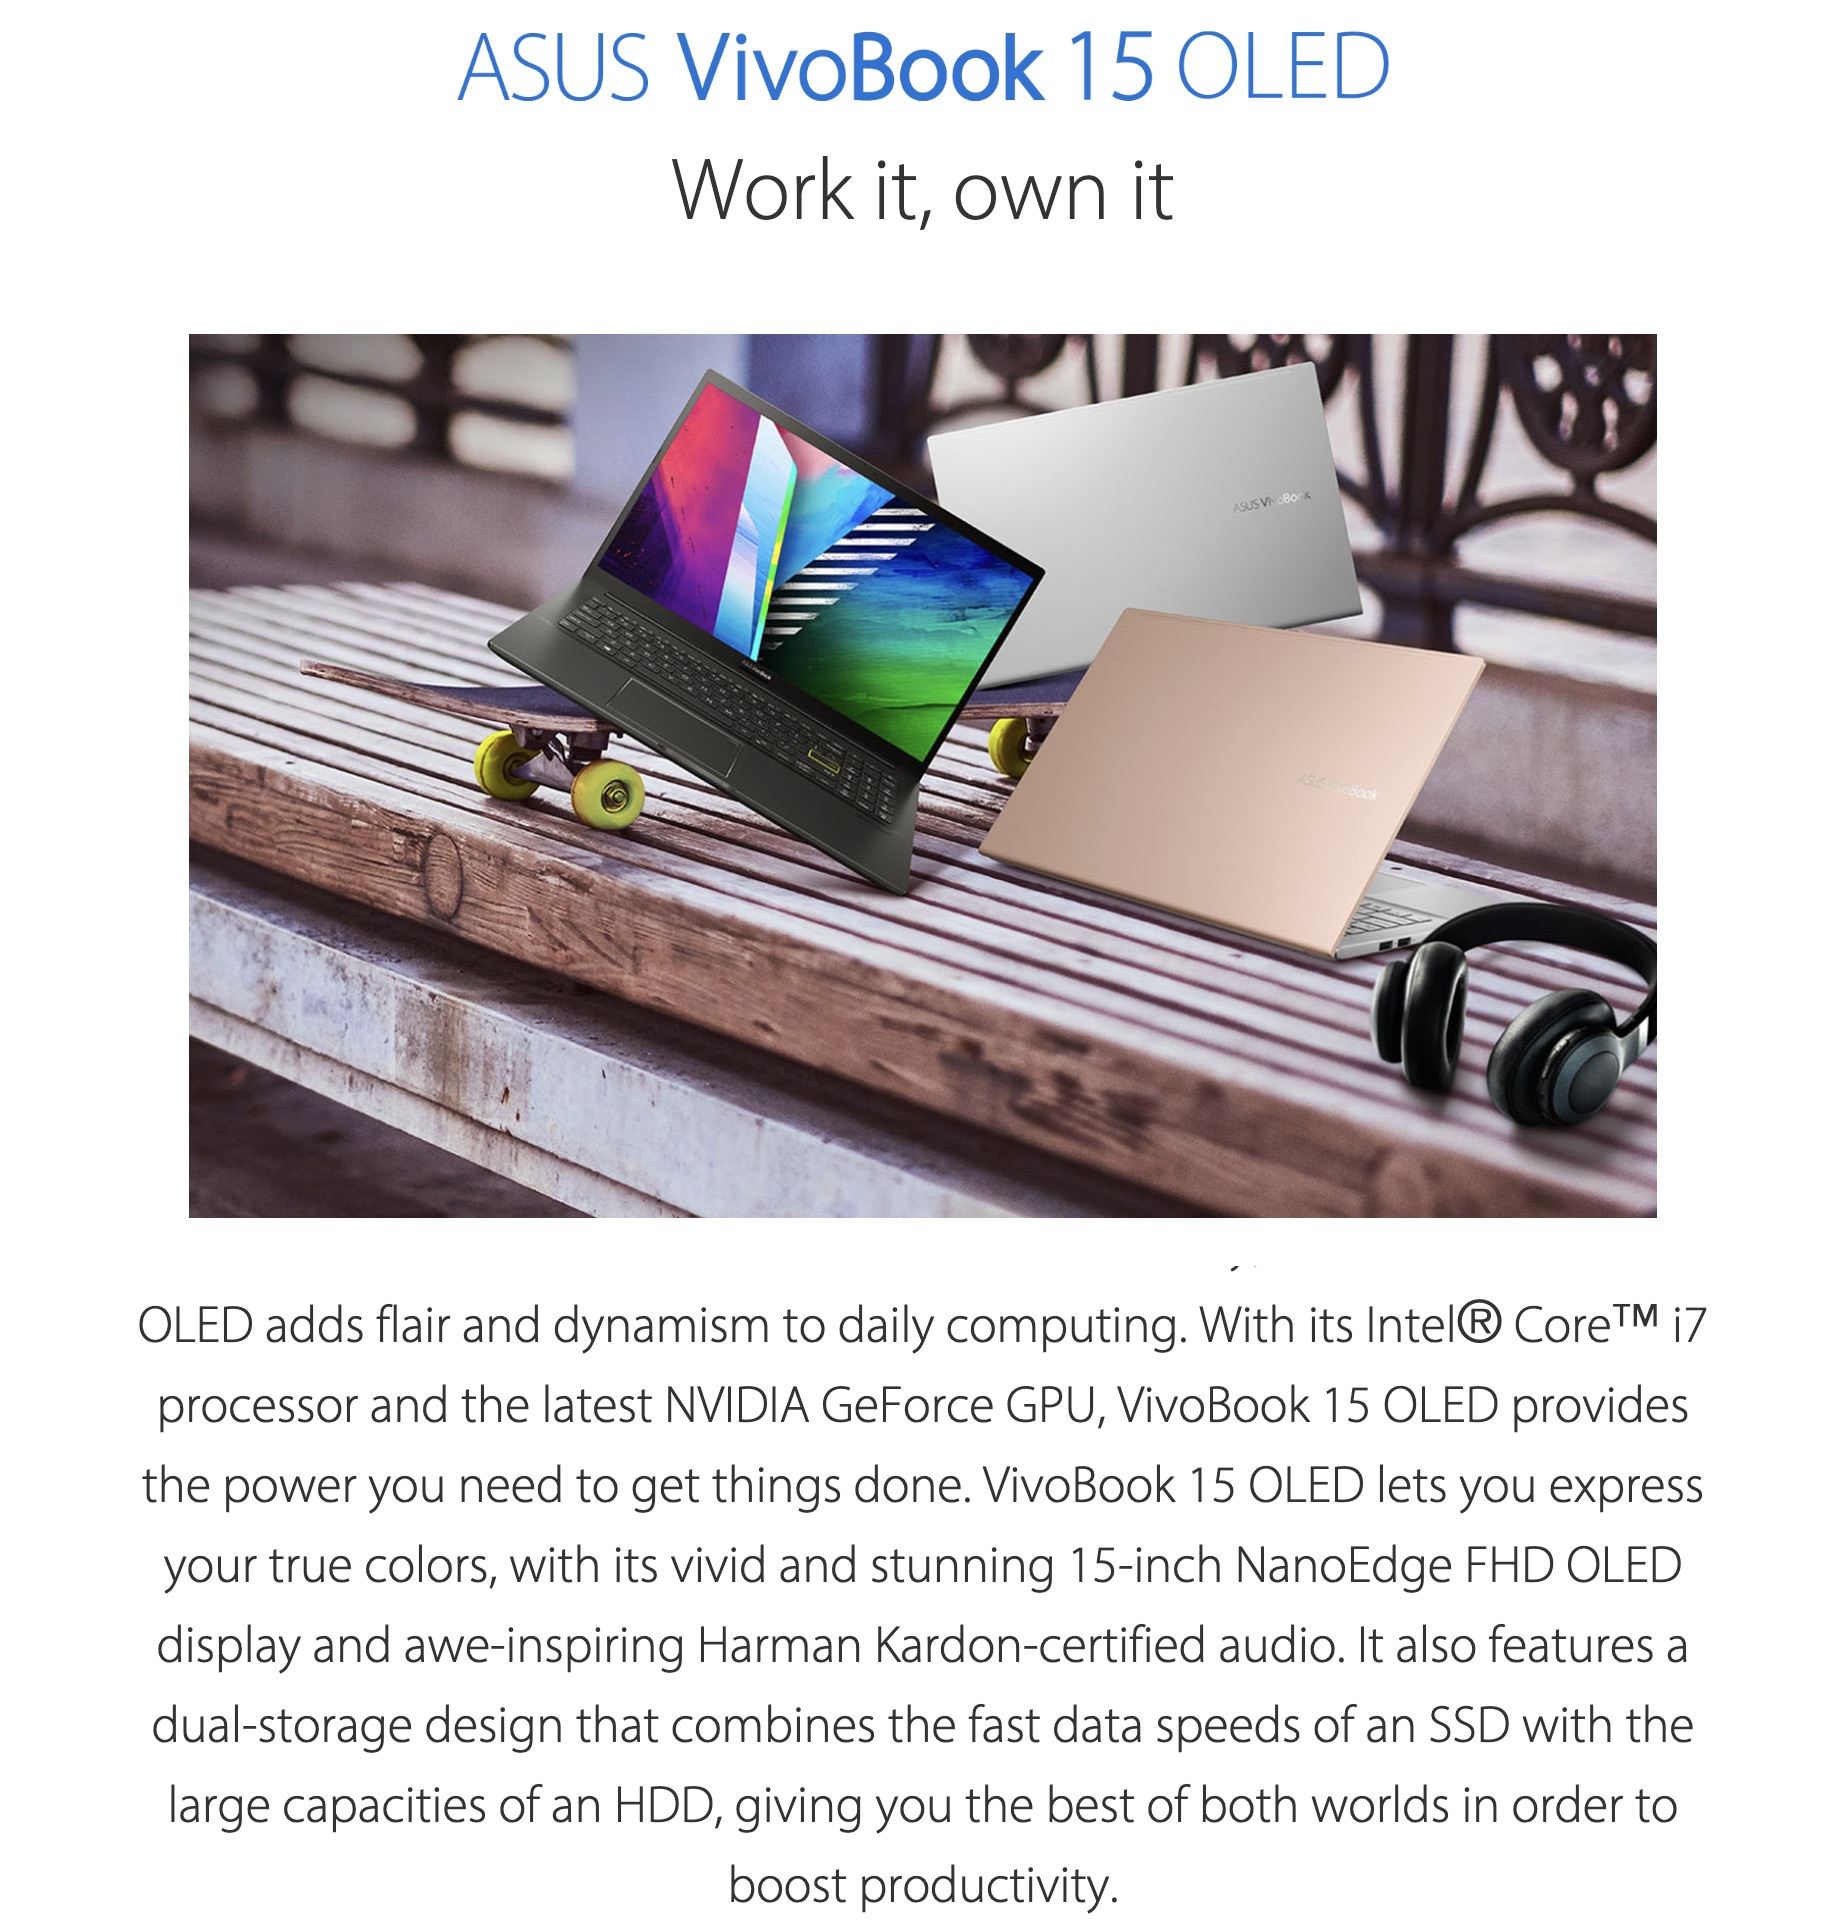 Asus-VivoBook-15-OLED-Laptop-Description-1